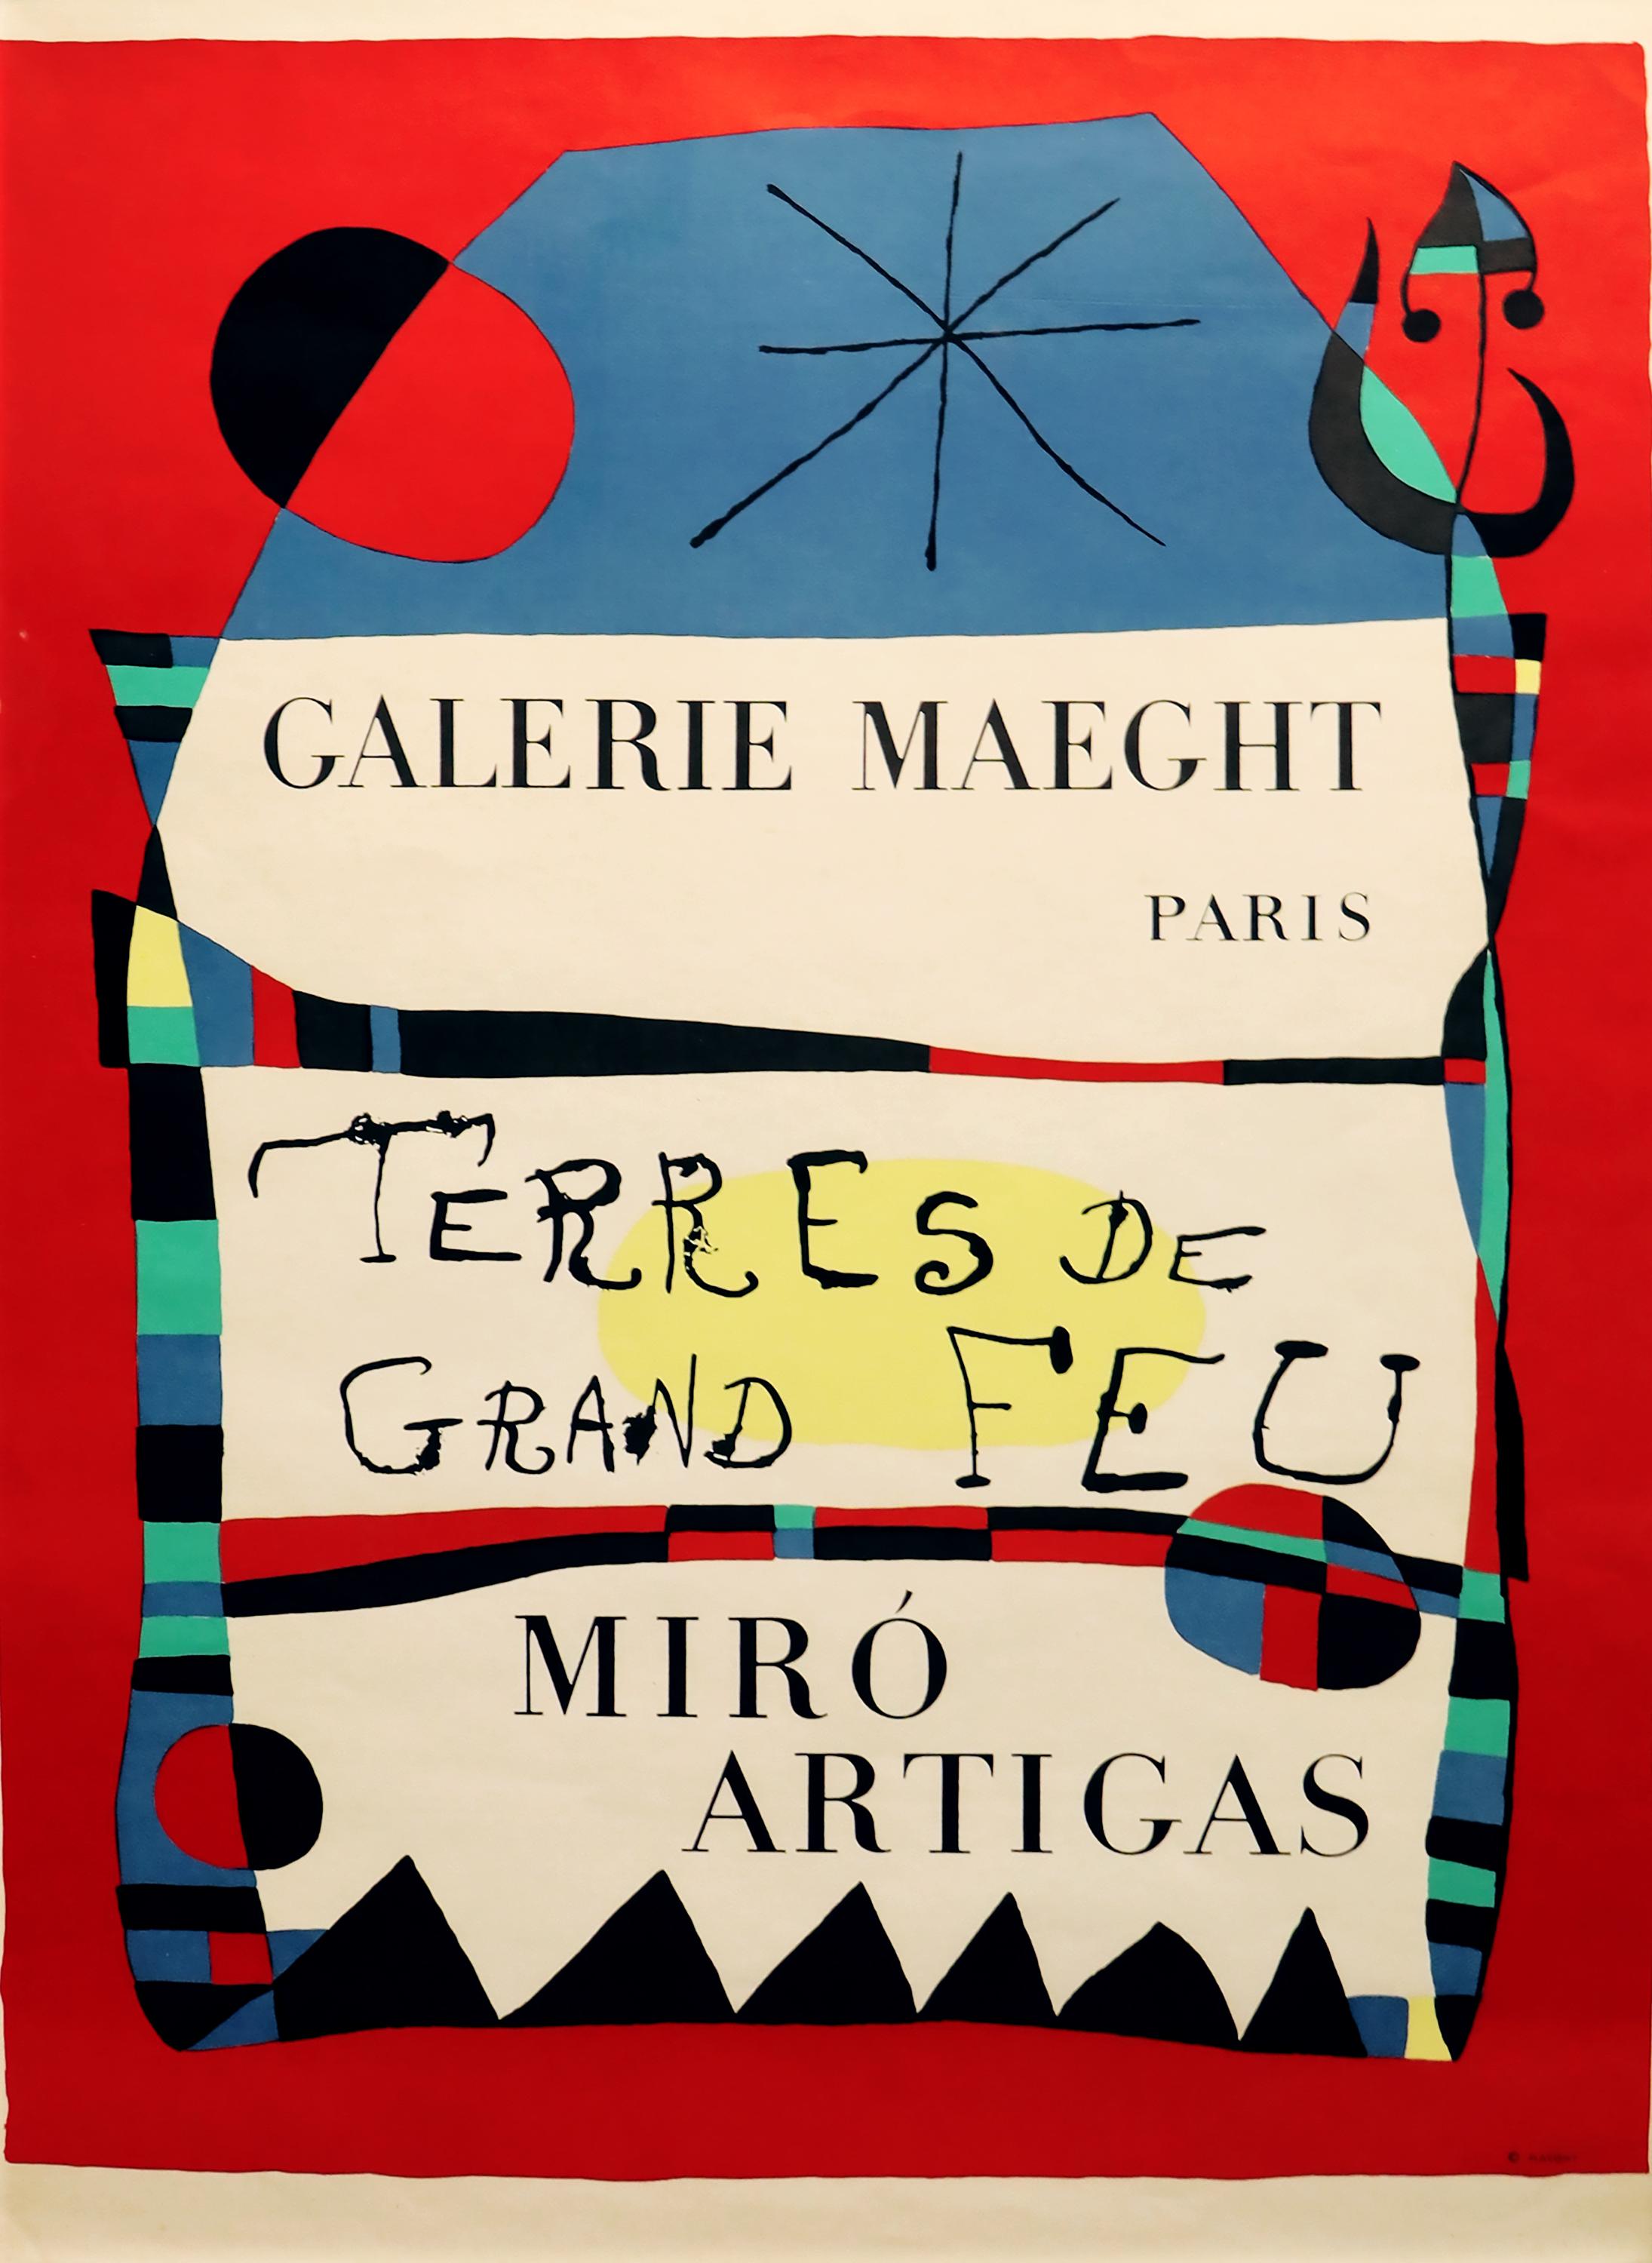 (after) Joan Miró Abstract Print - Teres de Grand Feu